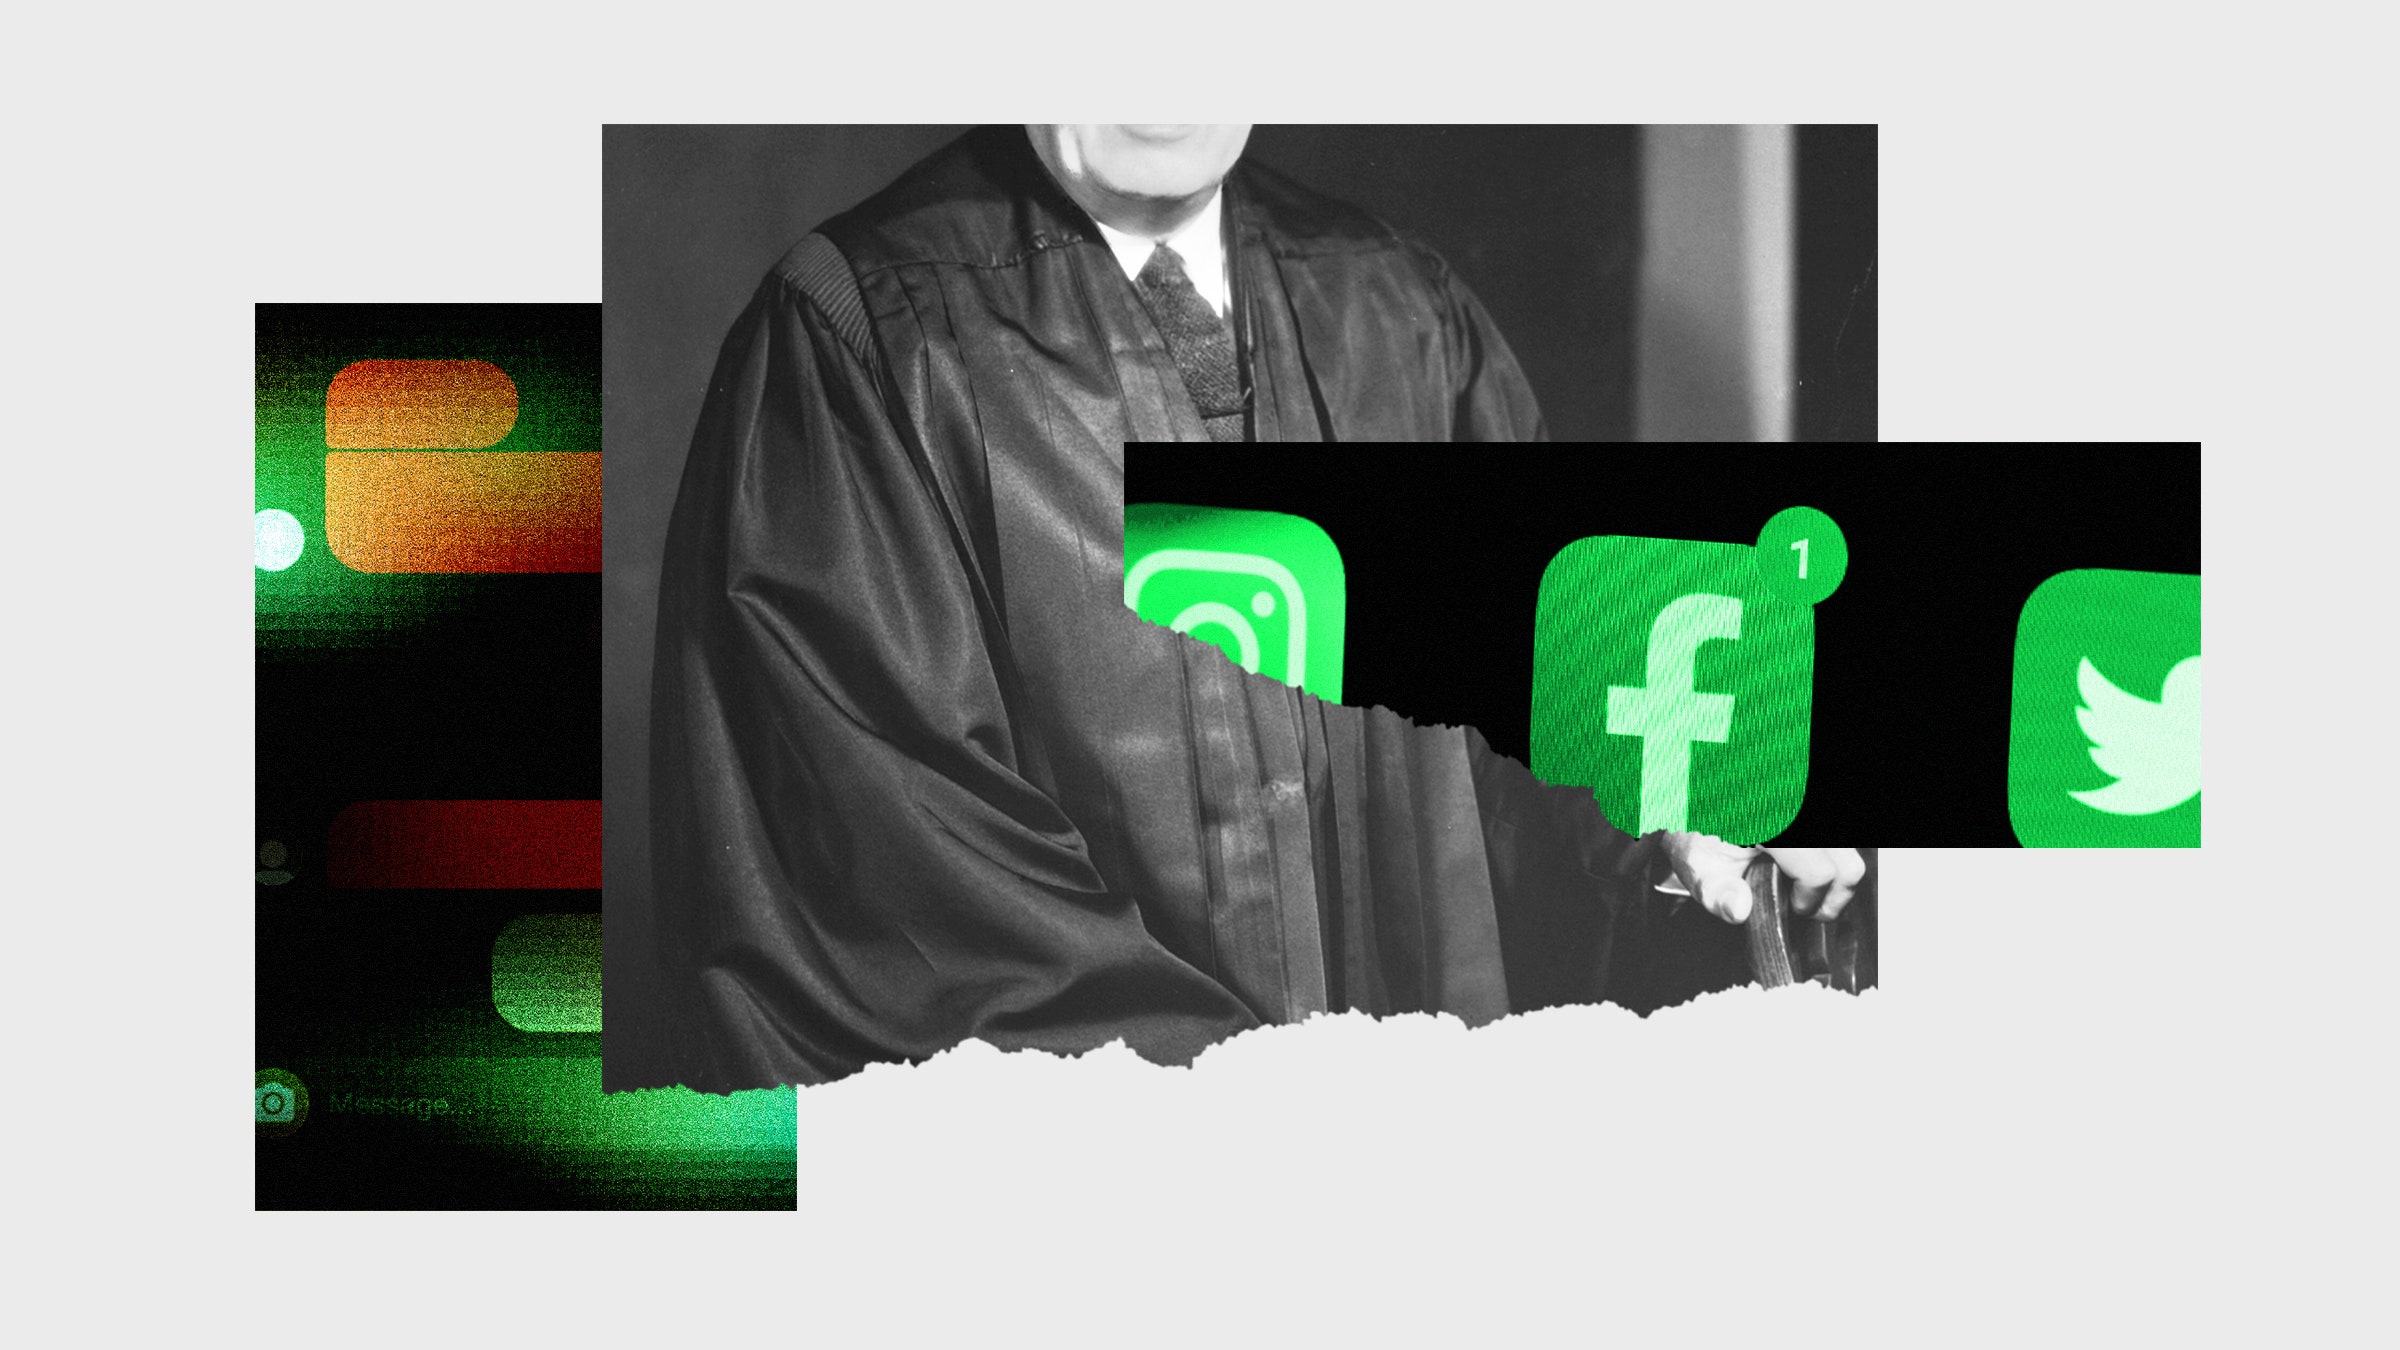 Colagem de fotos de um juiz com aplicações de redes sociais no telefone e mensagens sociais